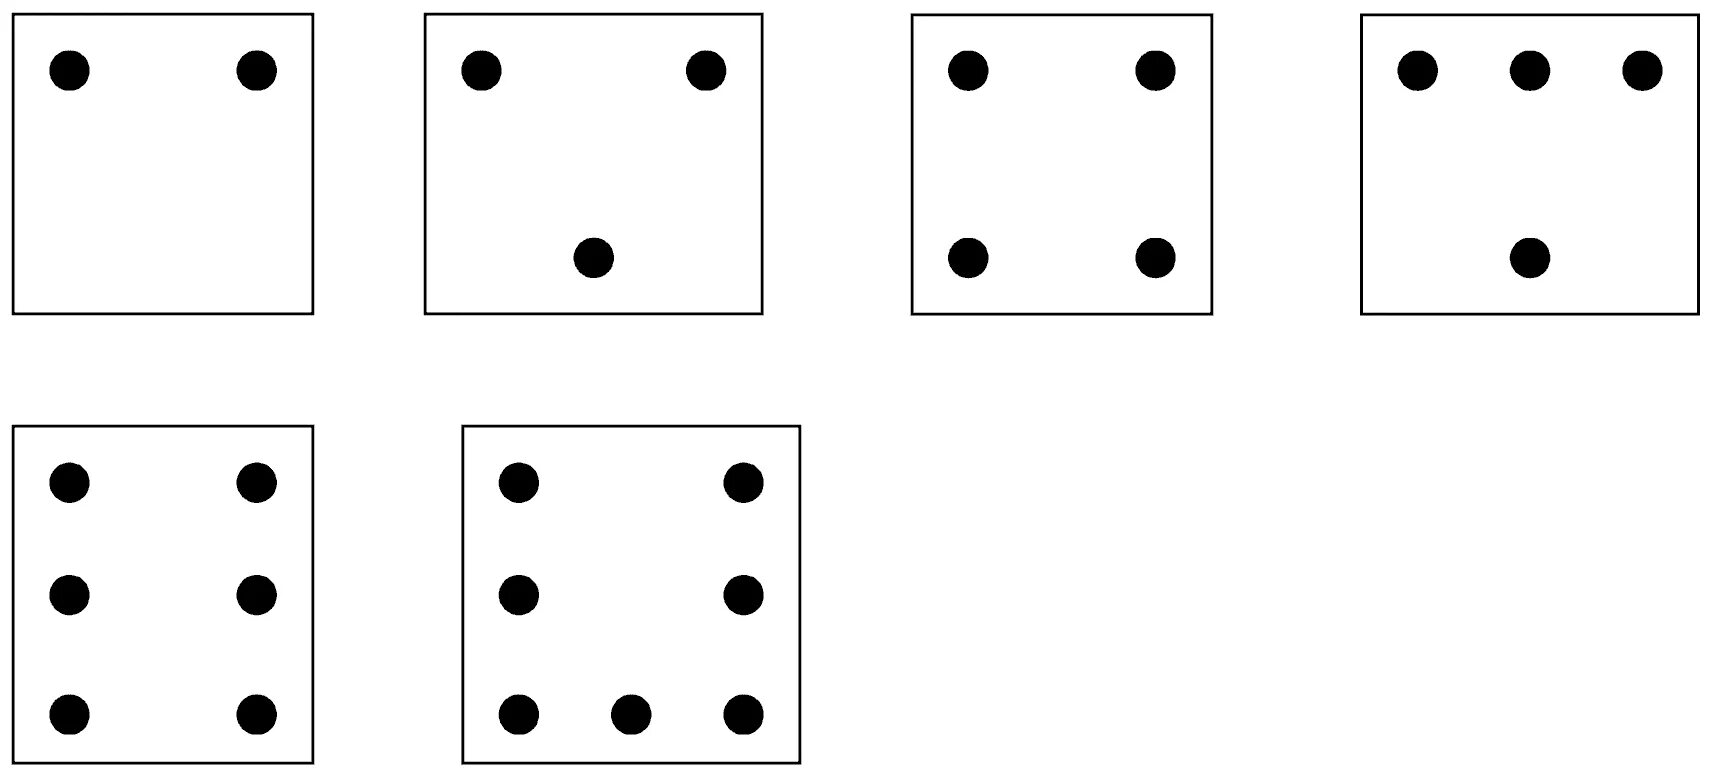 Точка на листе бумаги. Карточки Тачки. Числовые карточки с точками. Числовые карточки с кругами. Карточки с точками от 1 до 7.